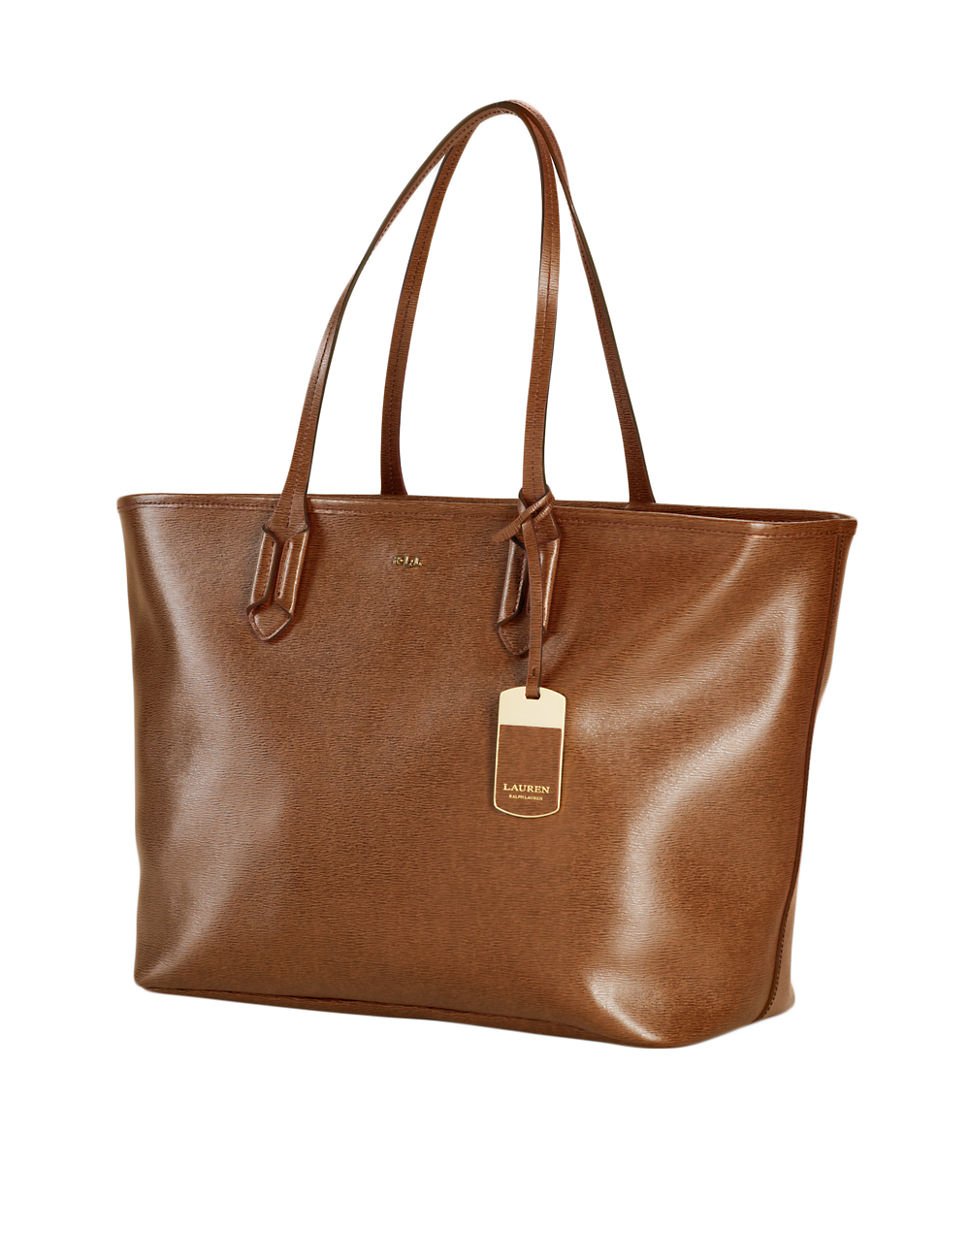 Lauren By Ralph Lauren Tate Classic Leather Tote Bag in Brown (LAUREN ...